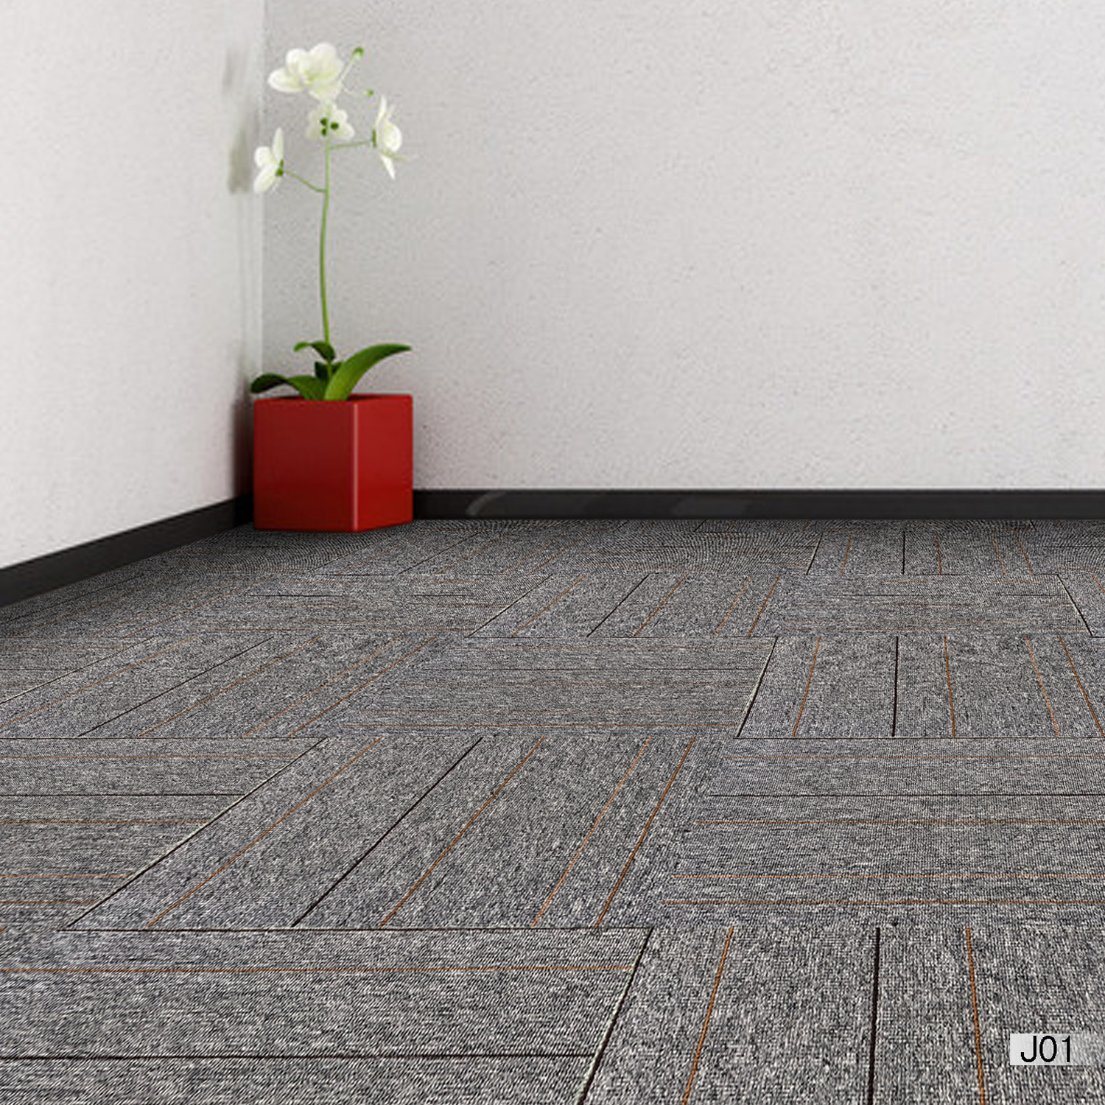 Jiang 1/10 Gauge PP Office Carpet Tiles with Bitumen Backing Cheap Price